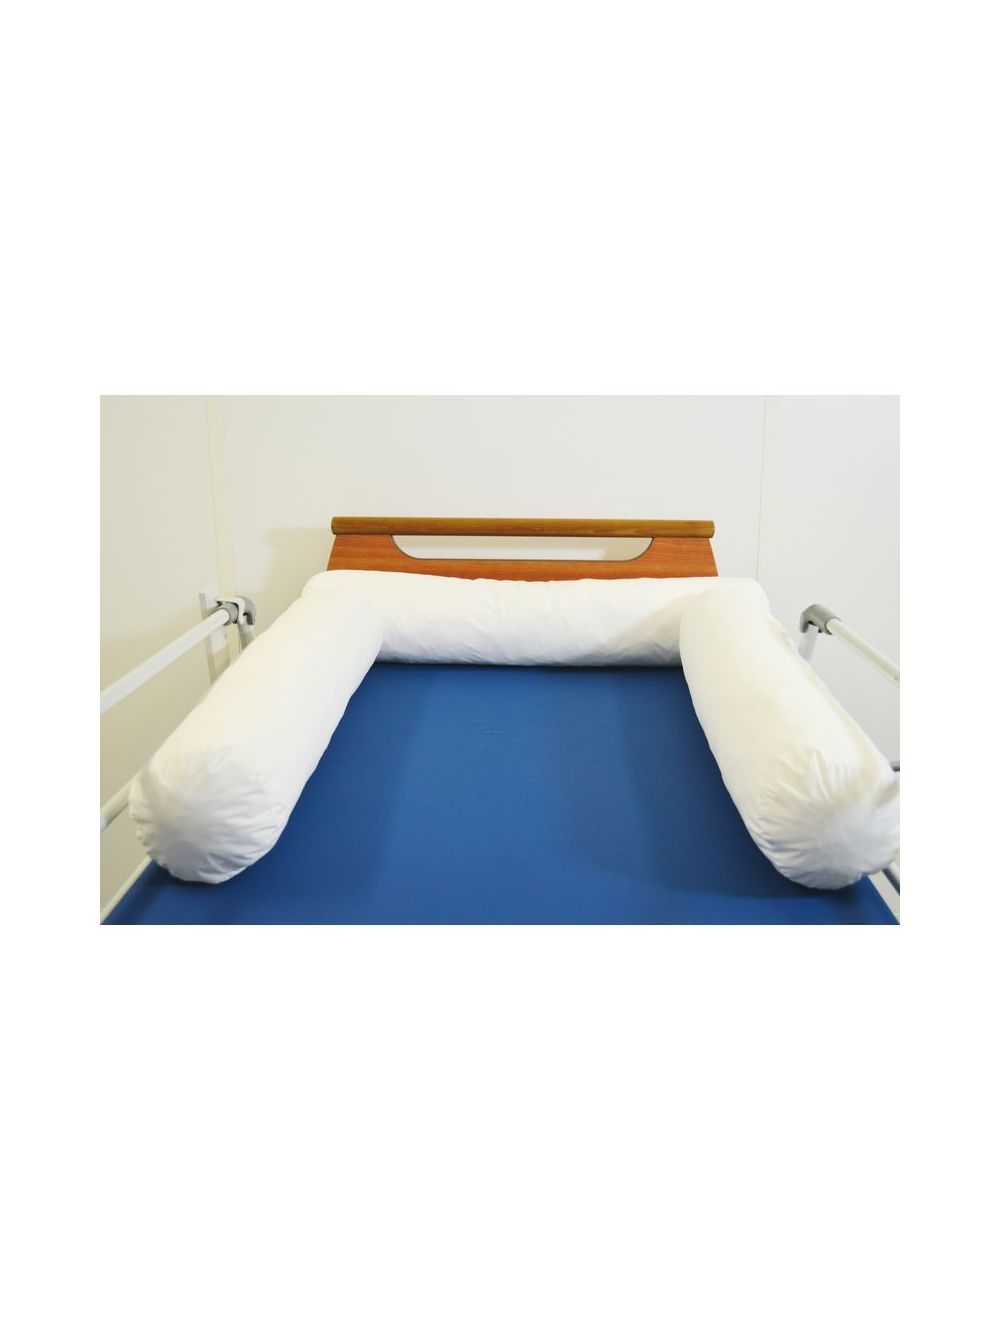 boudins de protection pour le lit, coussins de sécurité, protection de lit